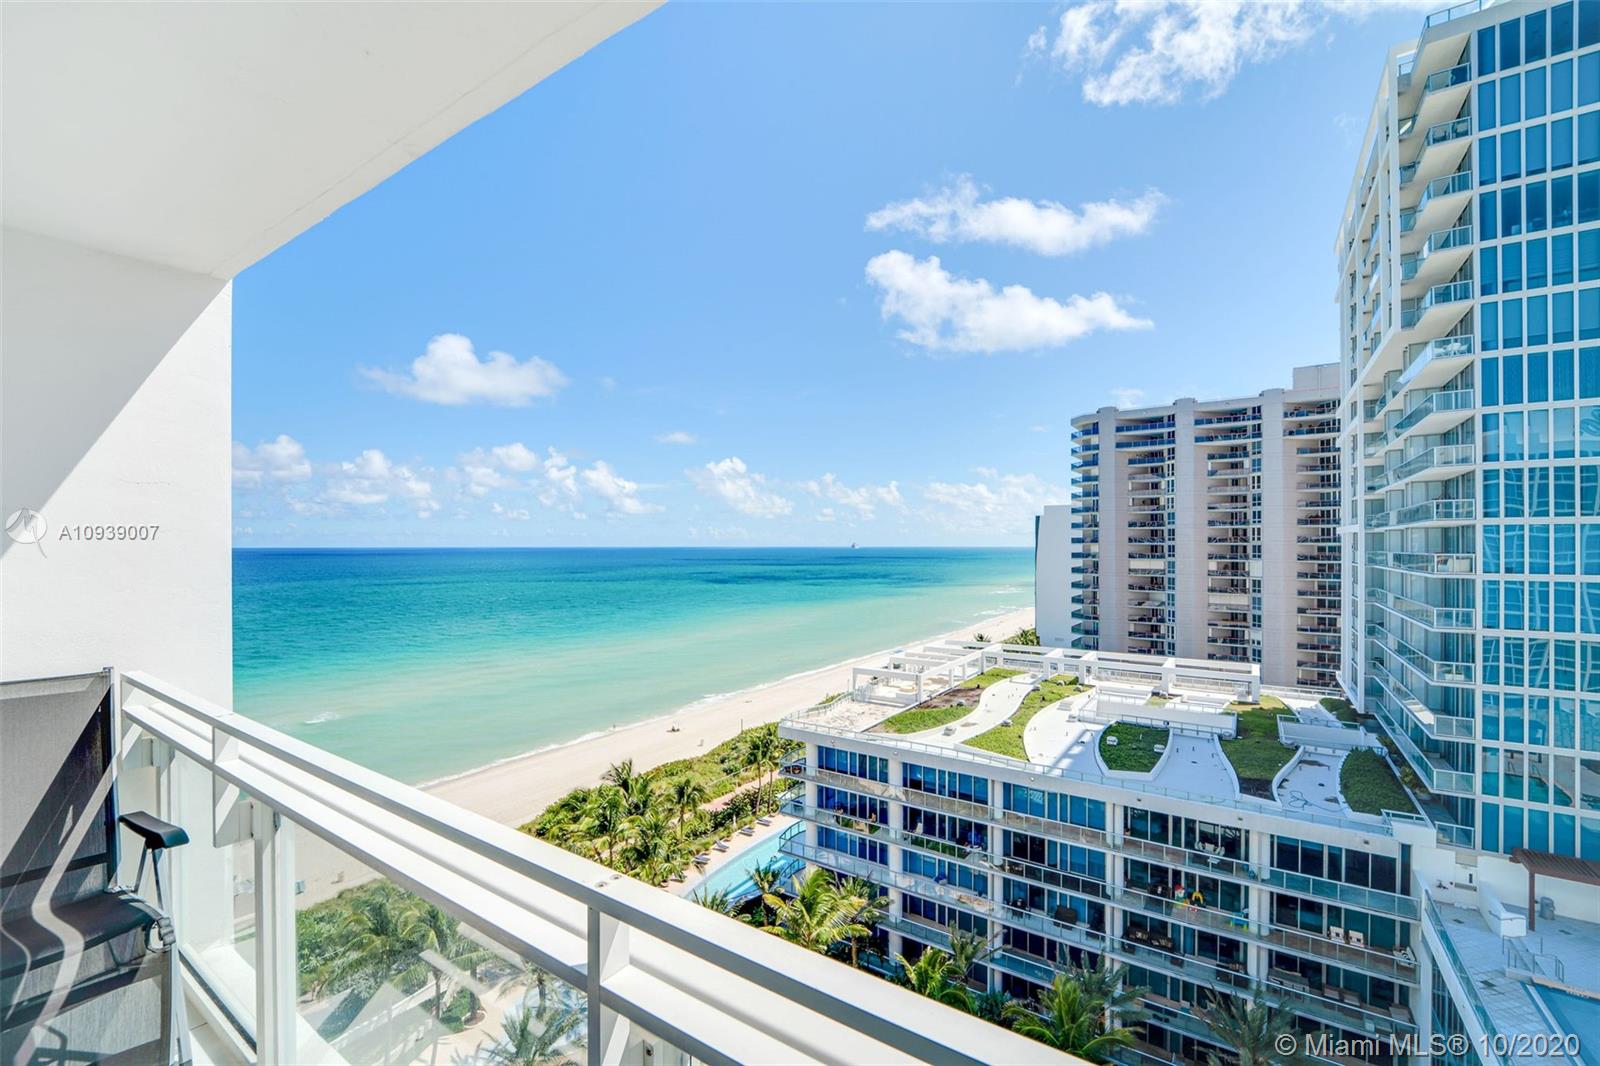 Carillon Condos Miami Beach | Condos For Sale